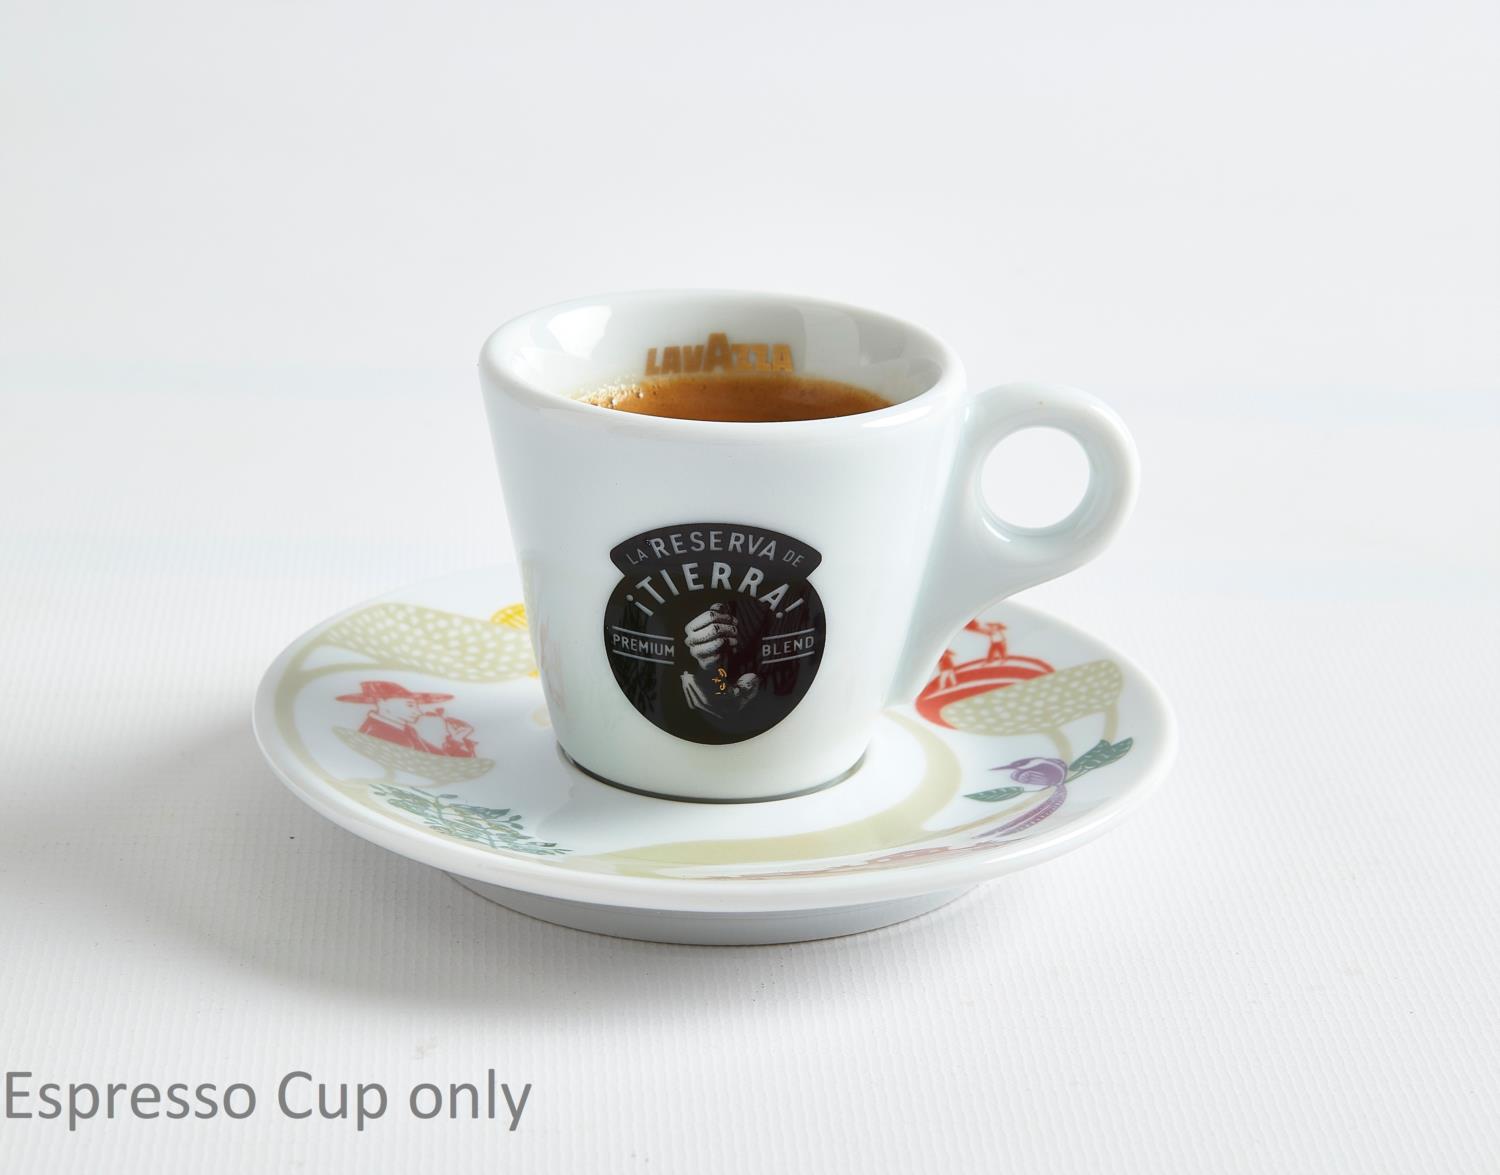 Lavazza La Reserva de Tierra Espresso Cups - Vero Coffee